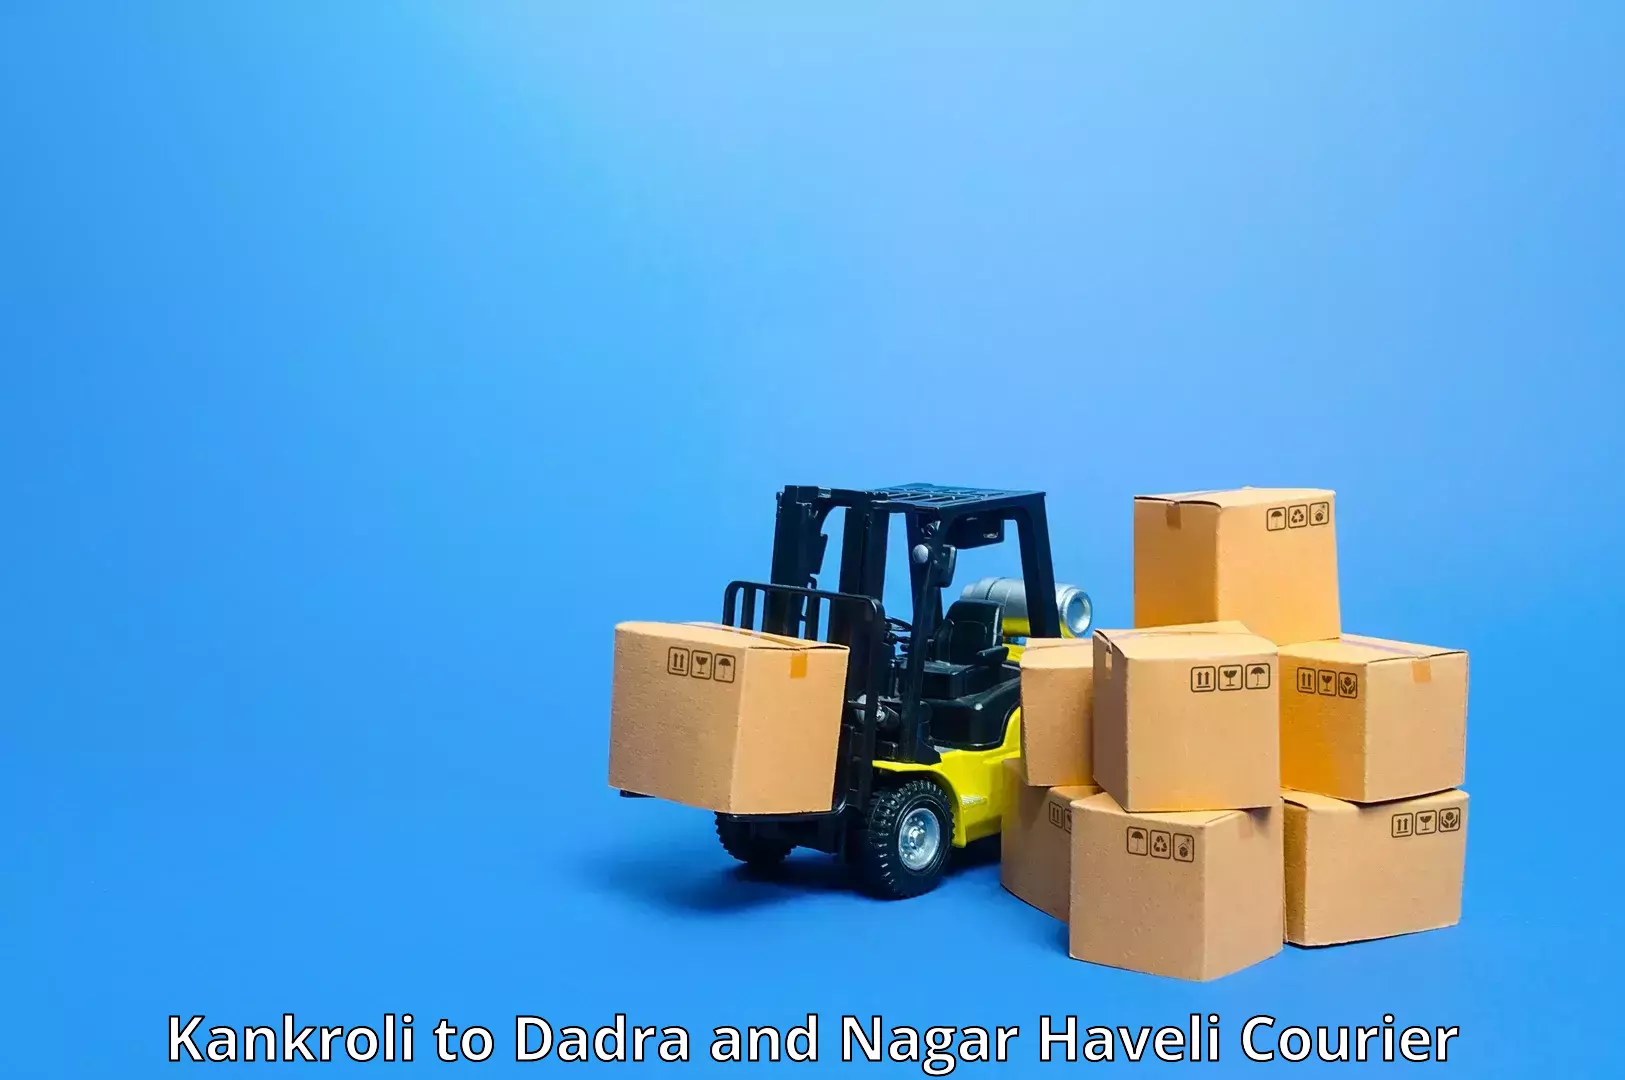 Same-day delivery solutions Kankroli to Dadra and Nagar Haveli